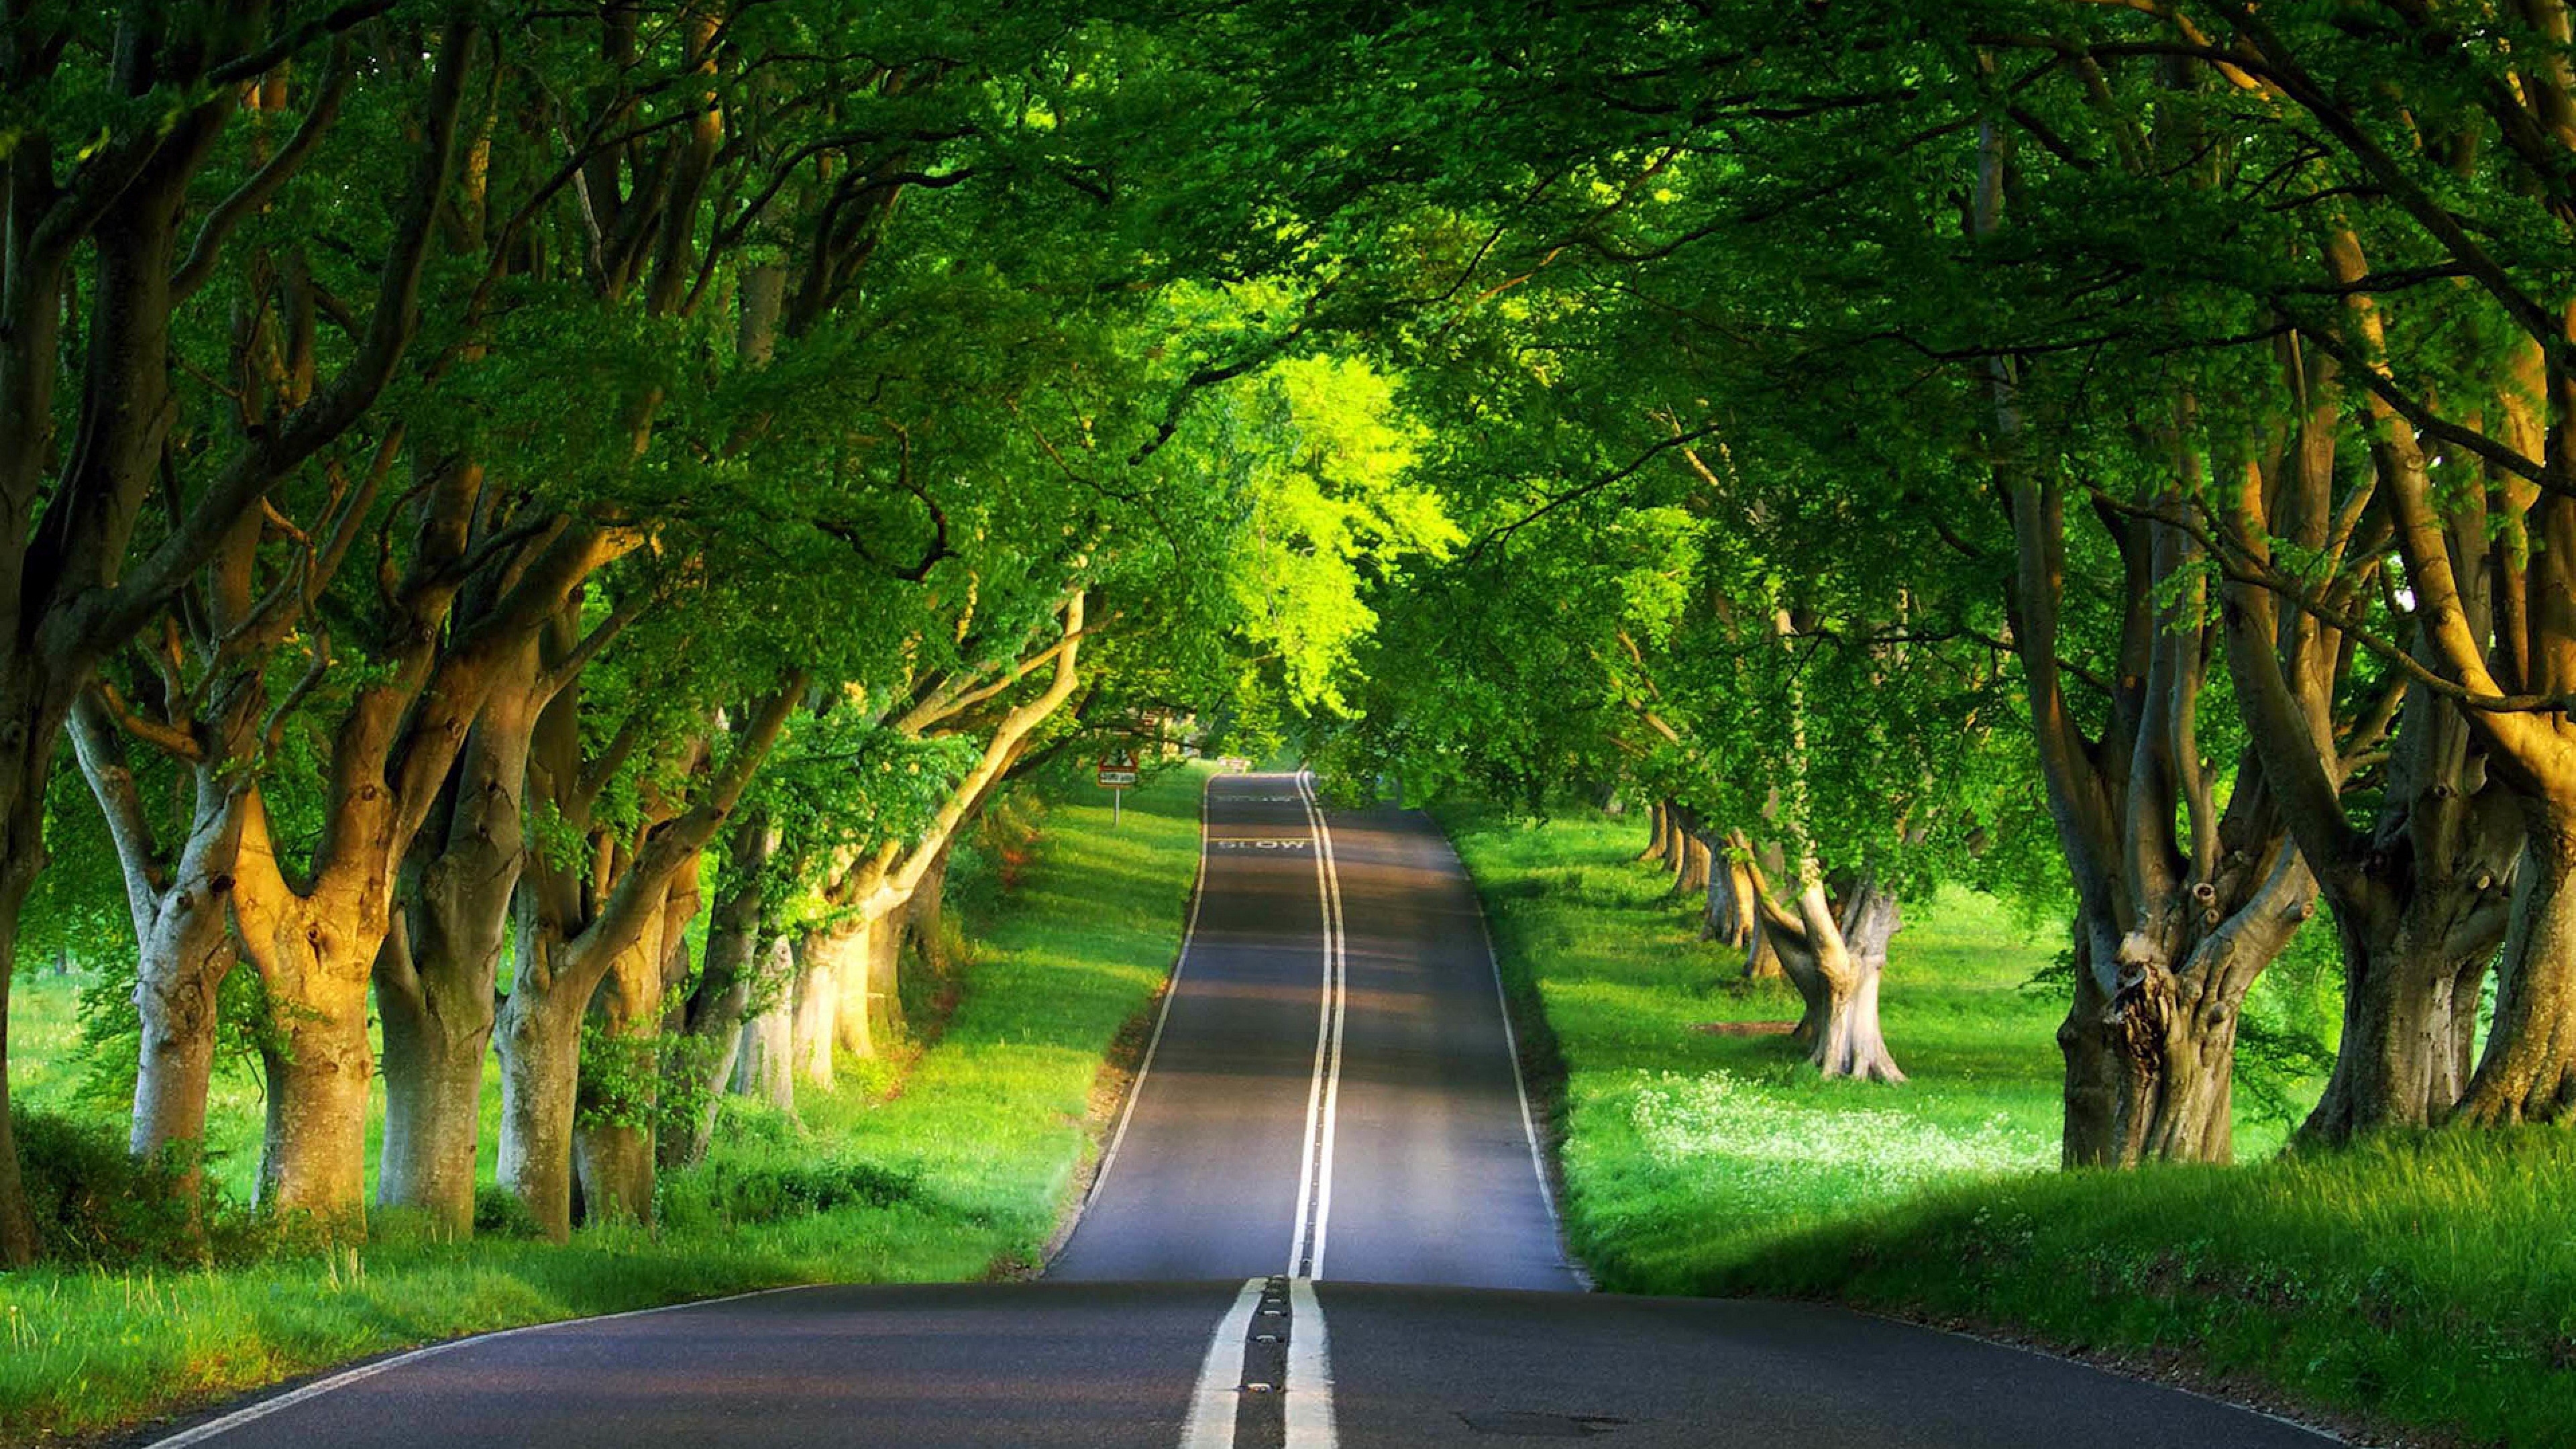 road_asphalt_trees_marking_doubl